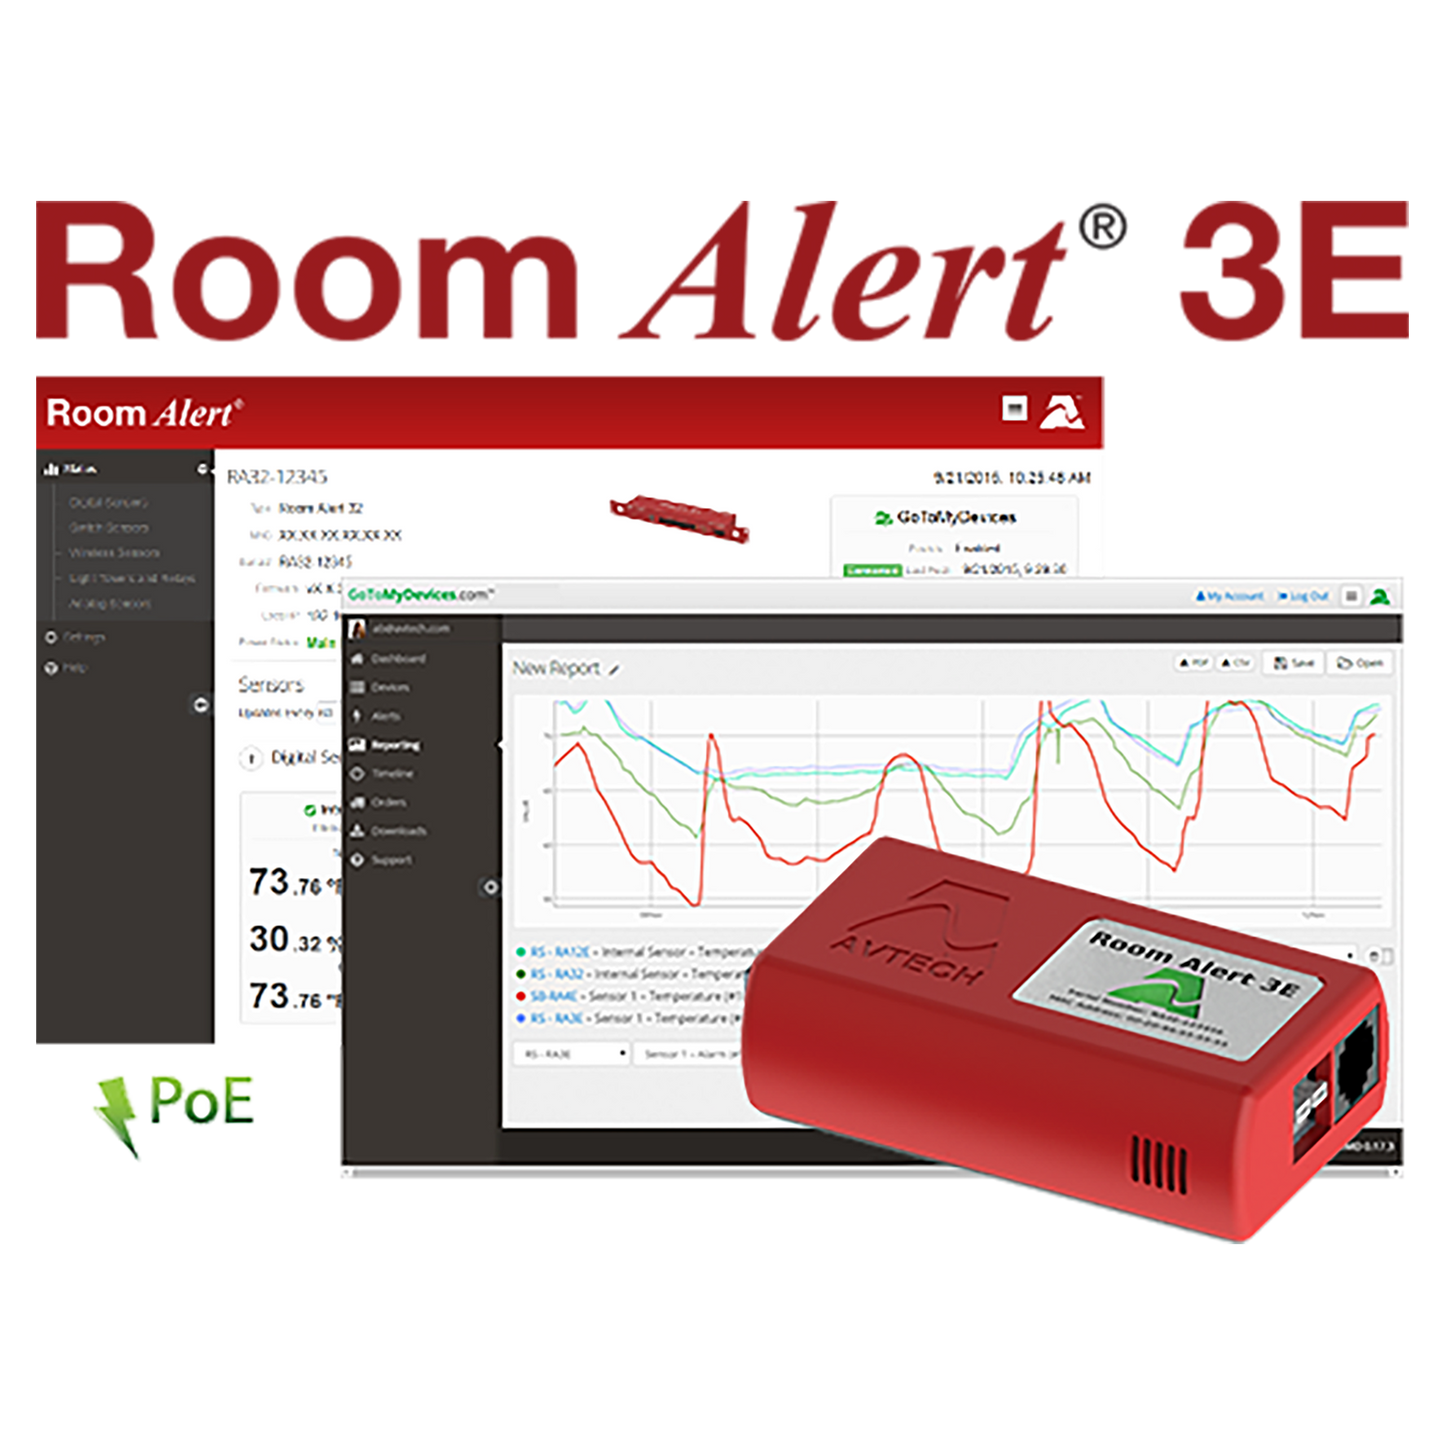 Avtech Room Alert 3E Monitor